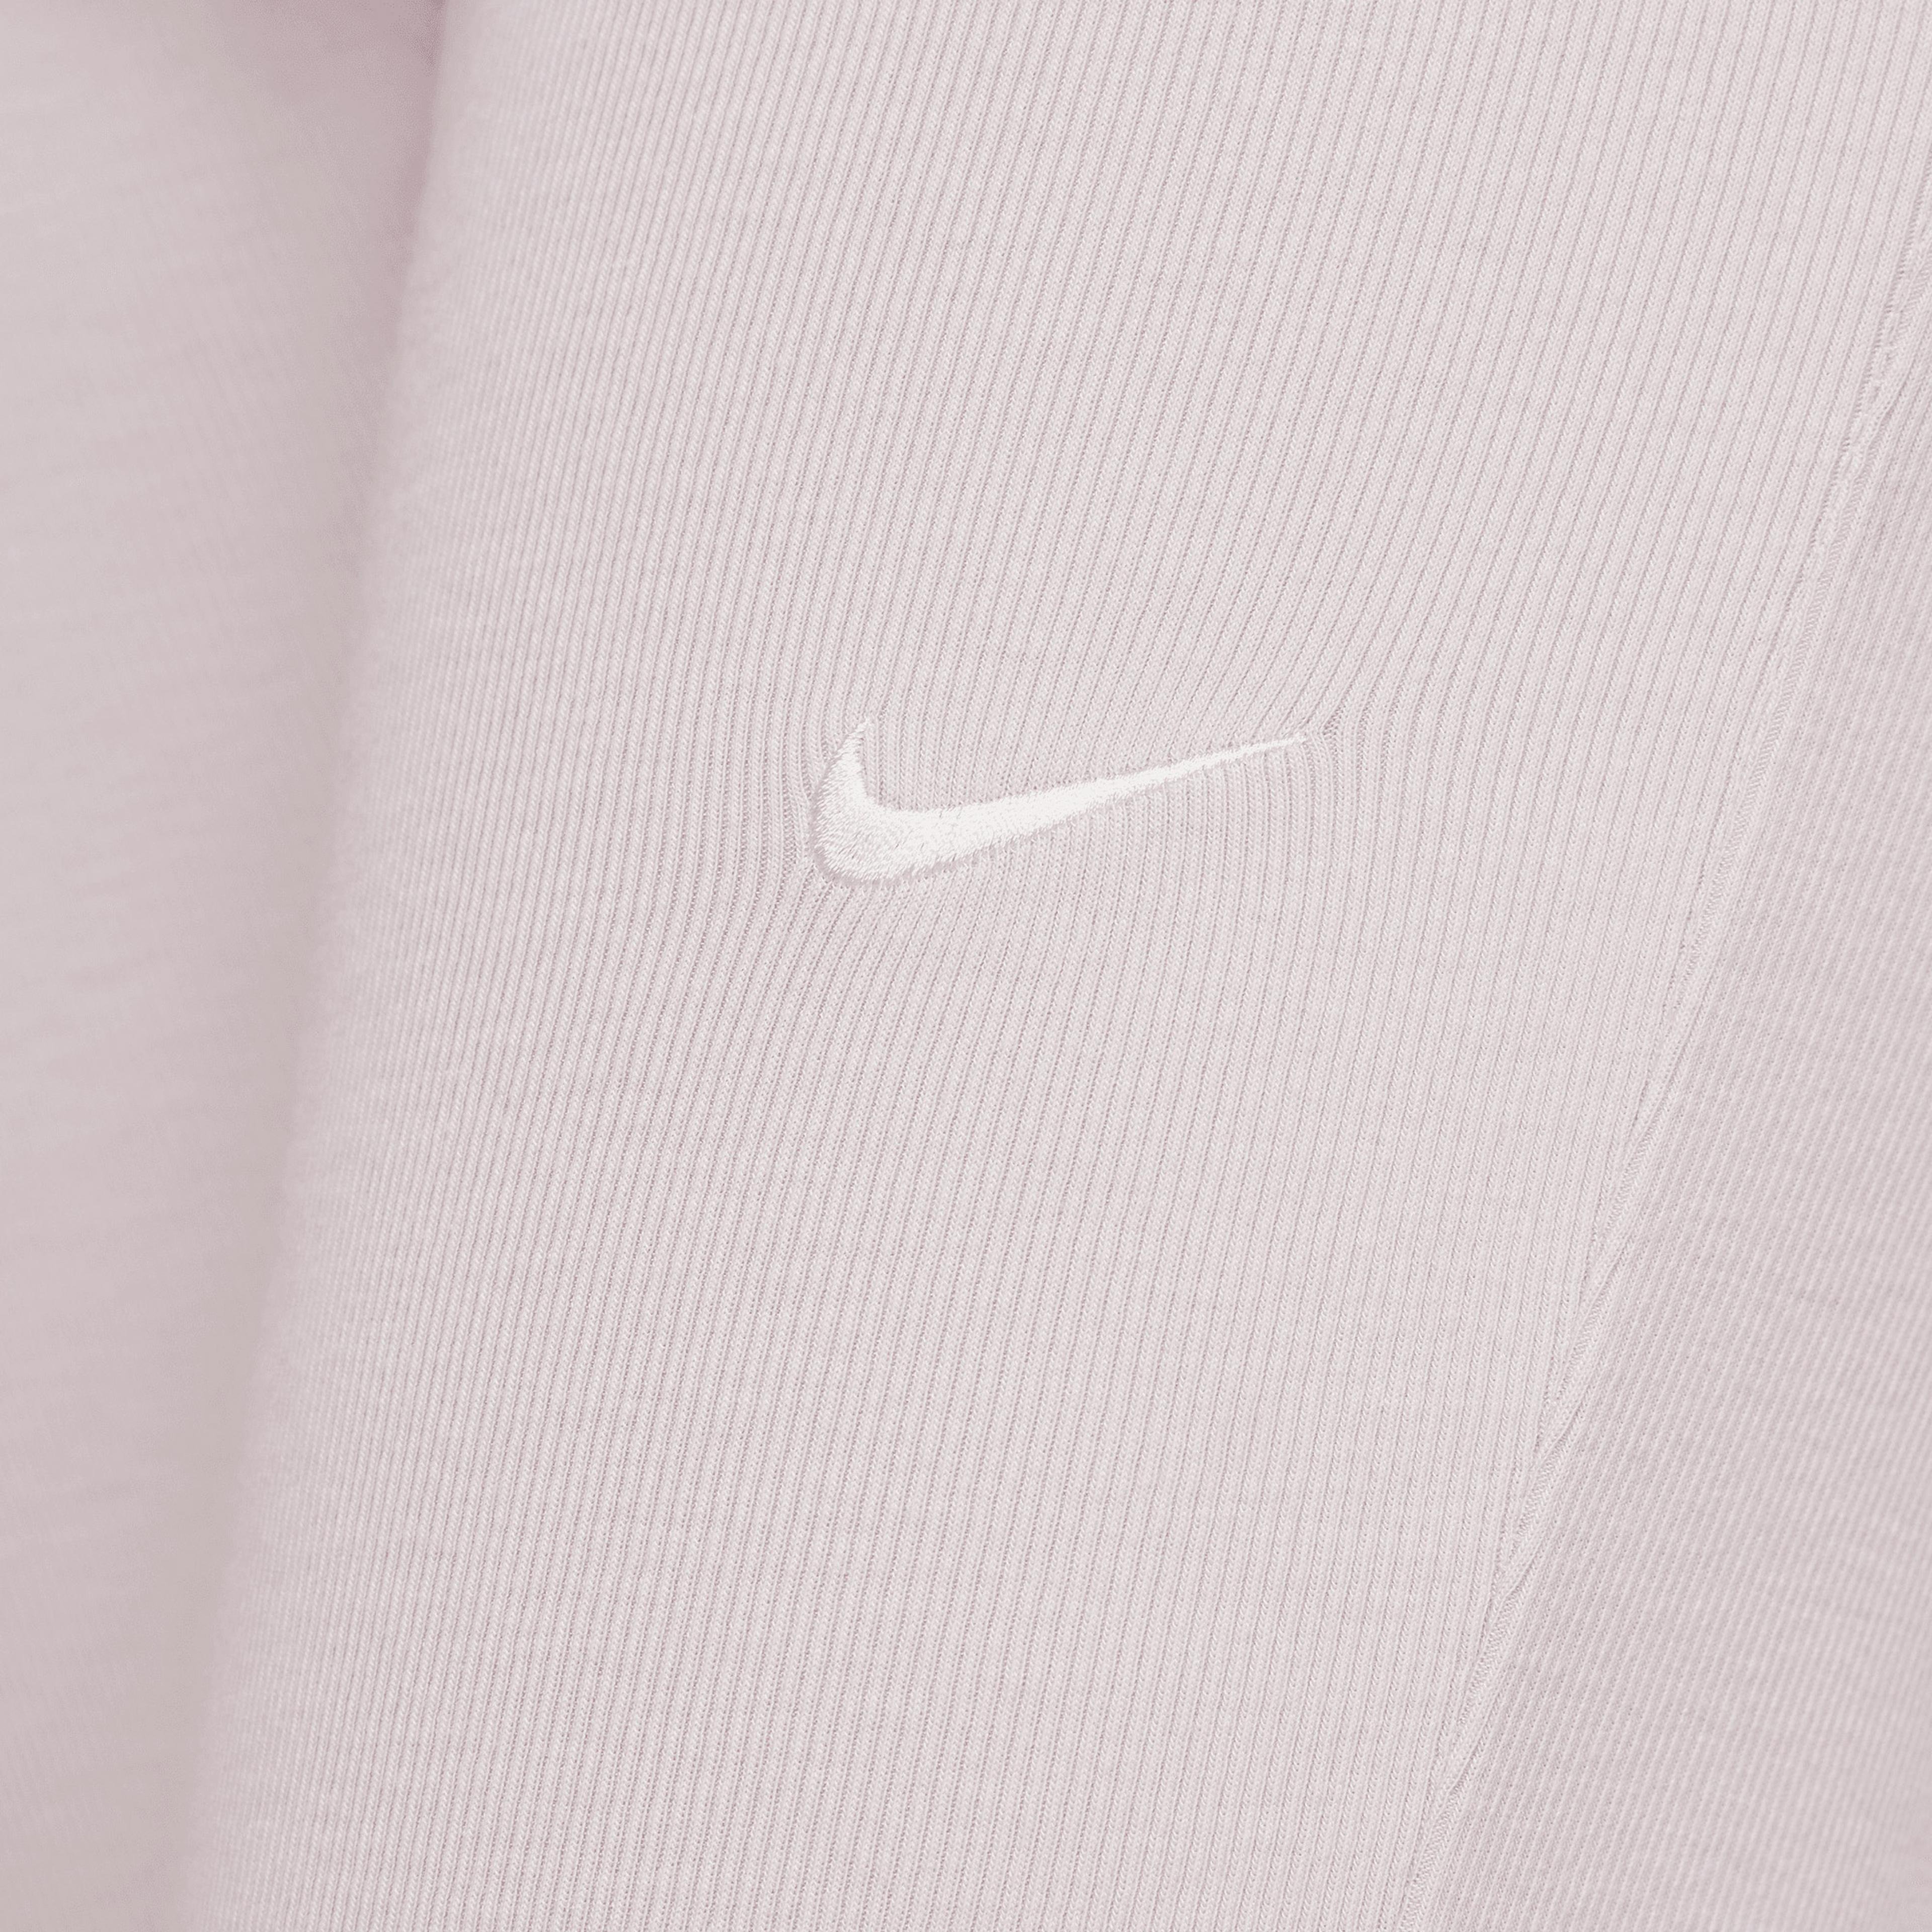 Nike Sportswear Chill Knit Kadın Pembe Tayt